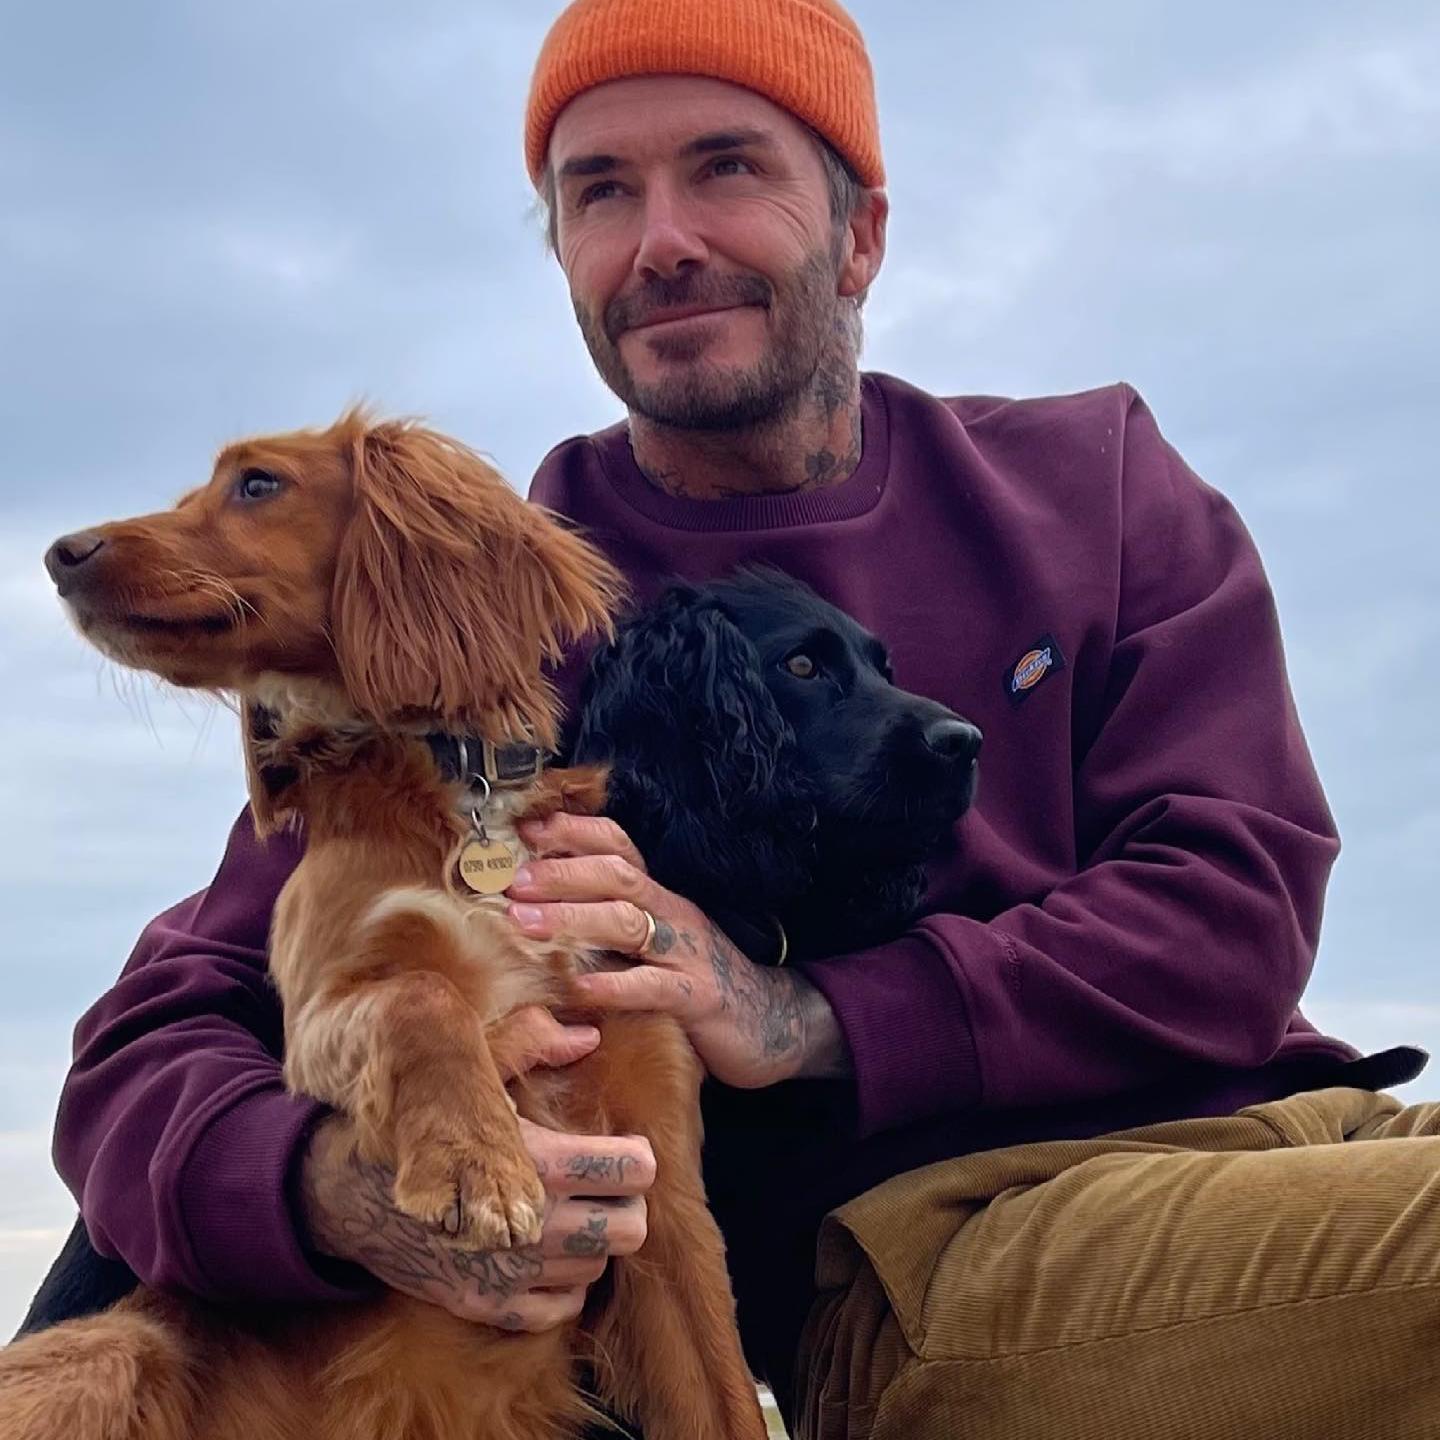 El futbolista David Beckham en una imagen con dos de sus perros